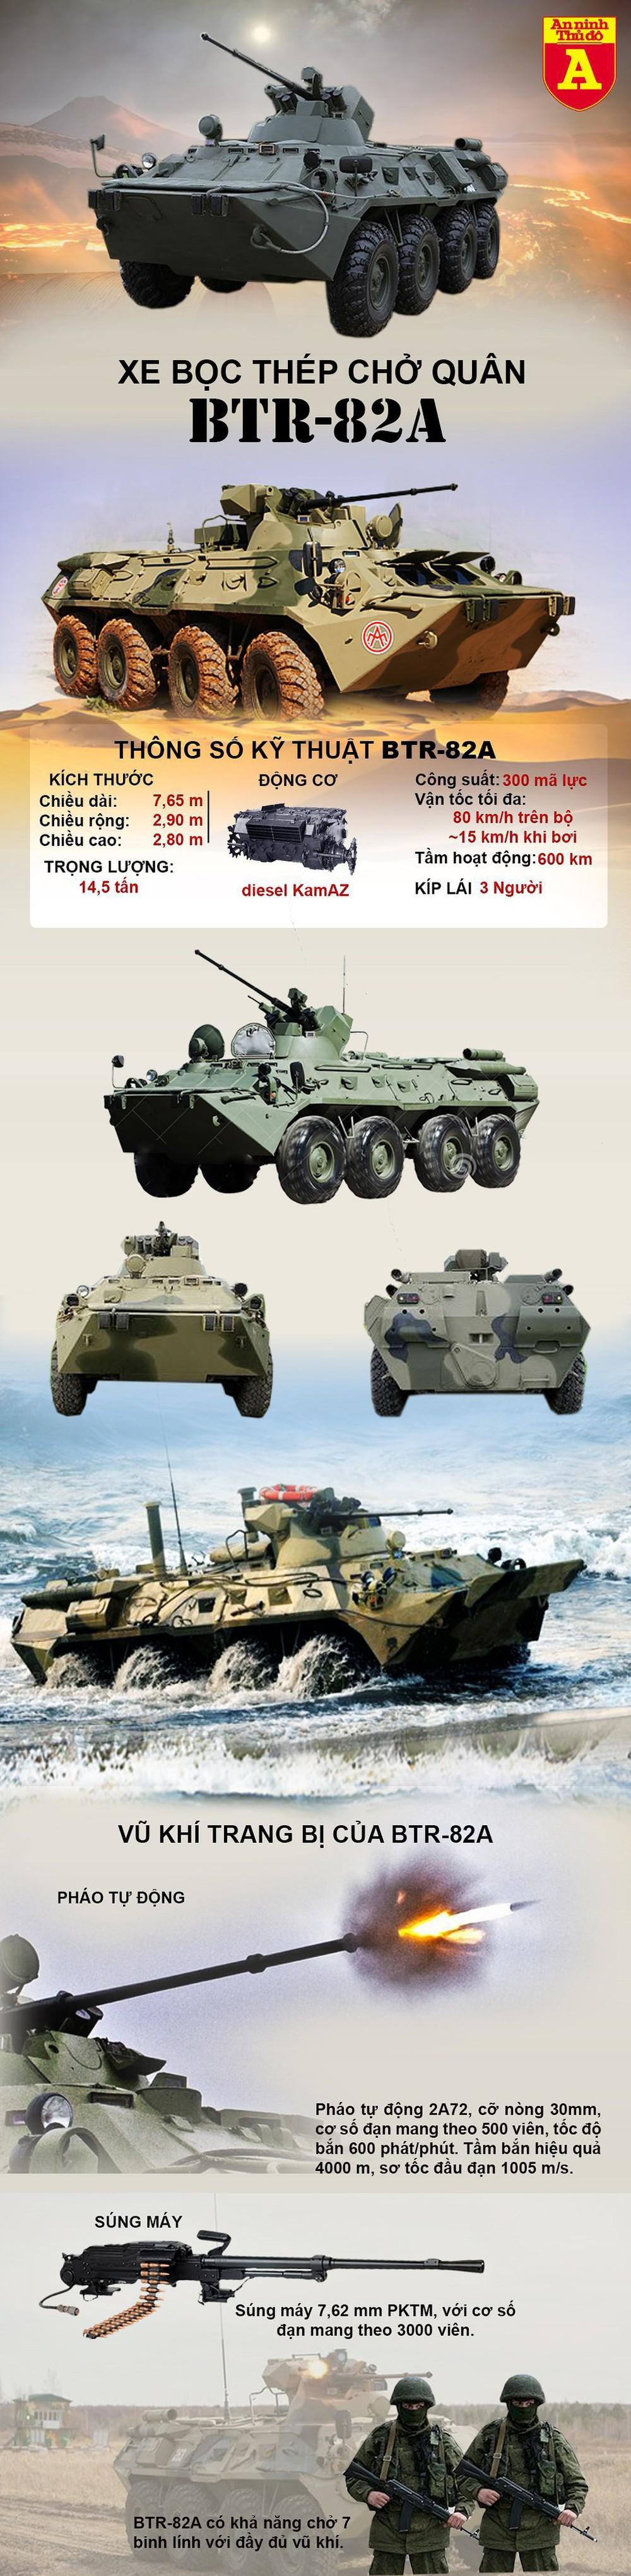 [Infographics] Xe chiến đấu bộ binh "báo thép" BTR-82A của Nga  - Ảnh 1